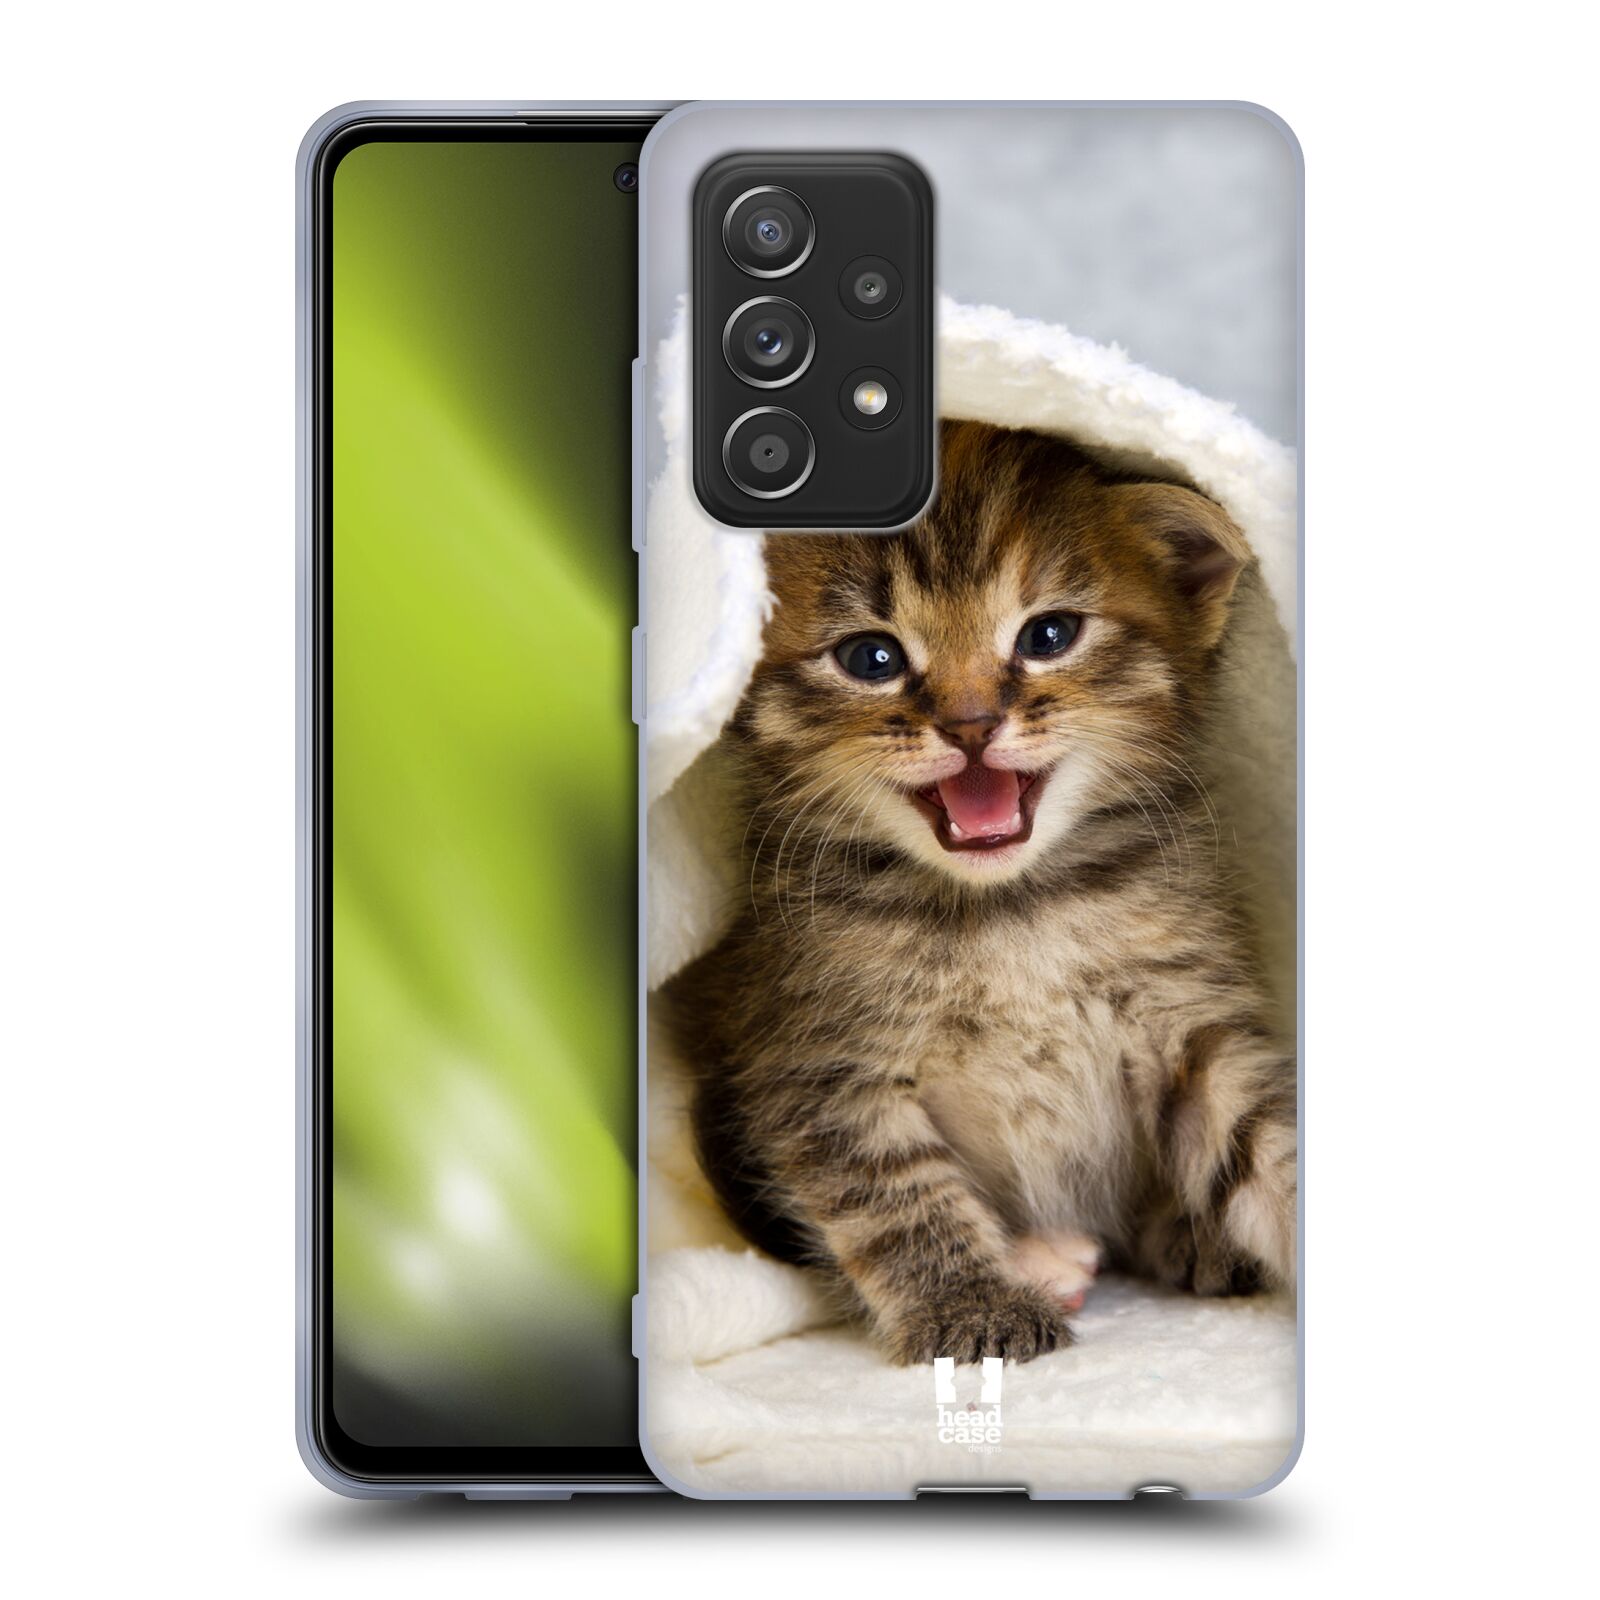 Plastový obal HEAD CASE na mobil Samsung Galaxy A52 / A52 5G / A52s 5G vzor Kočičky koťata foto kotě v ručníku